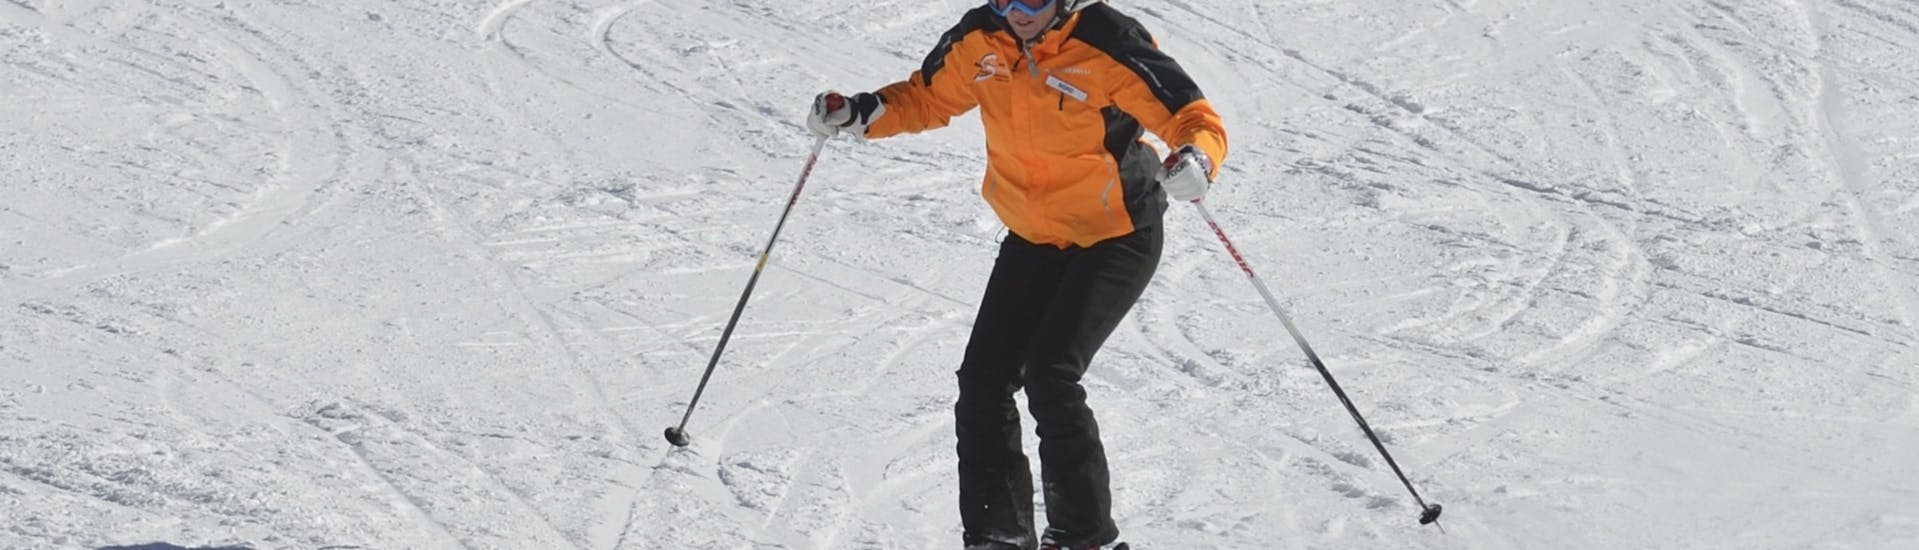 Cours particulier de ski Adultes dès 13 ans - Premier cours.